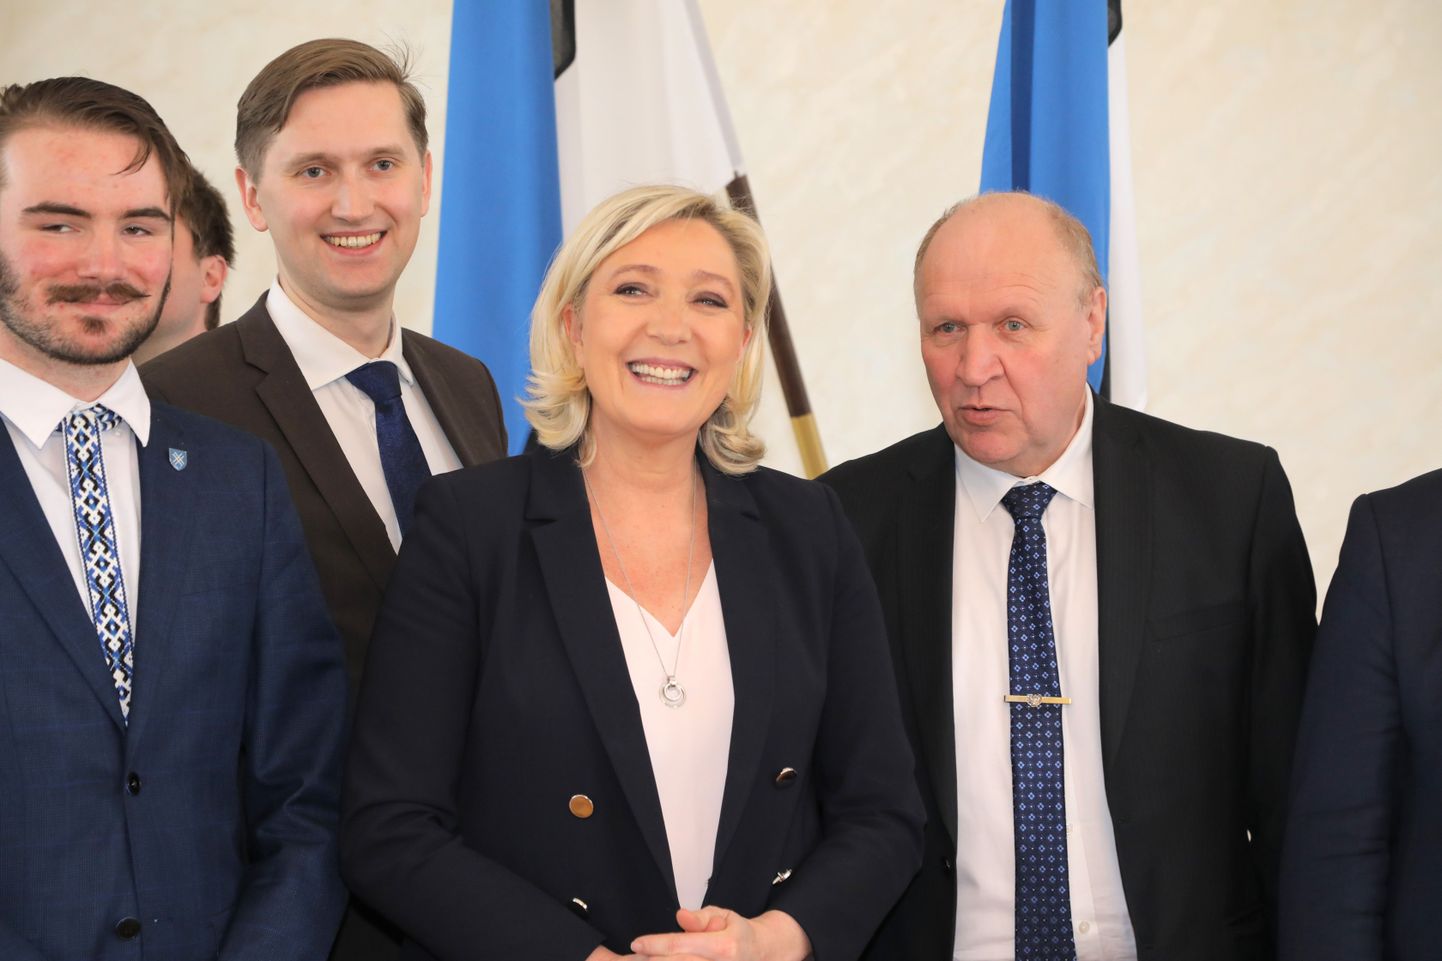 Prantsusmaa paremäärmusliku Rahvusrinde juht Marine Le Pen kohtus Tallinnas Eesti Konservatiivse Rahvaerakonna liikmetega, teiste seas ka siseminister Mart Helmega. Paraku nimetas Prantsuse meedia Le Penist kirjutavas artiklis Eesti siseministriks hoopis Andres Anveltit.